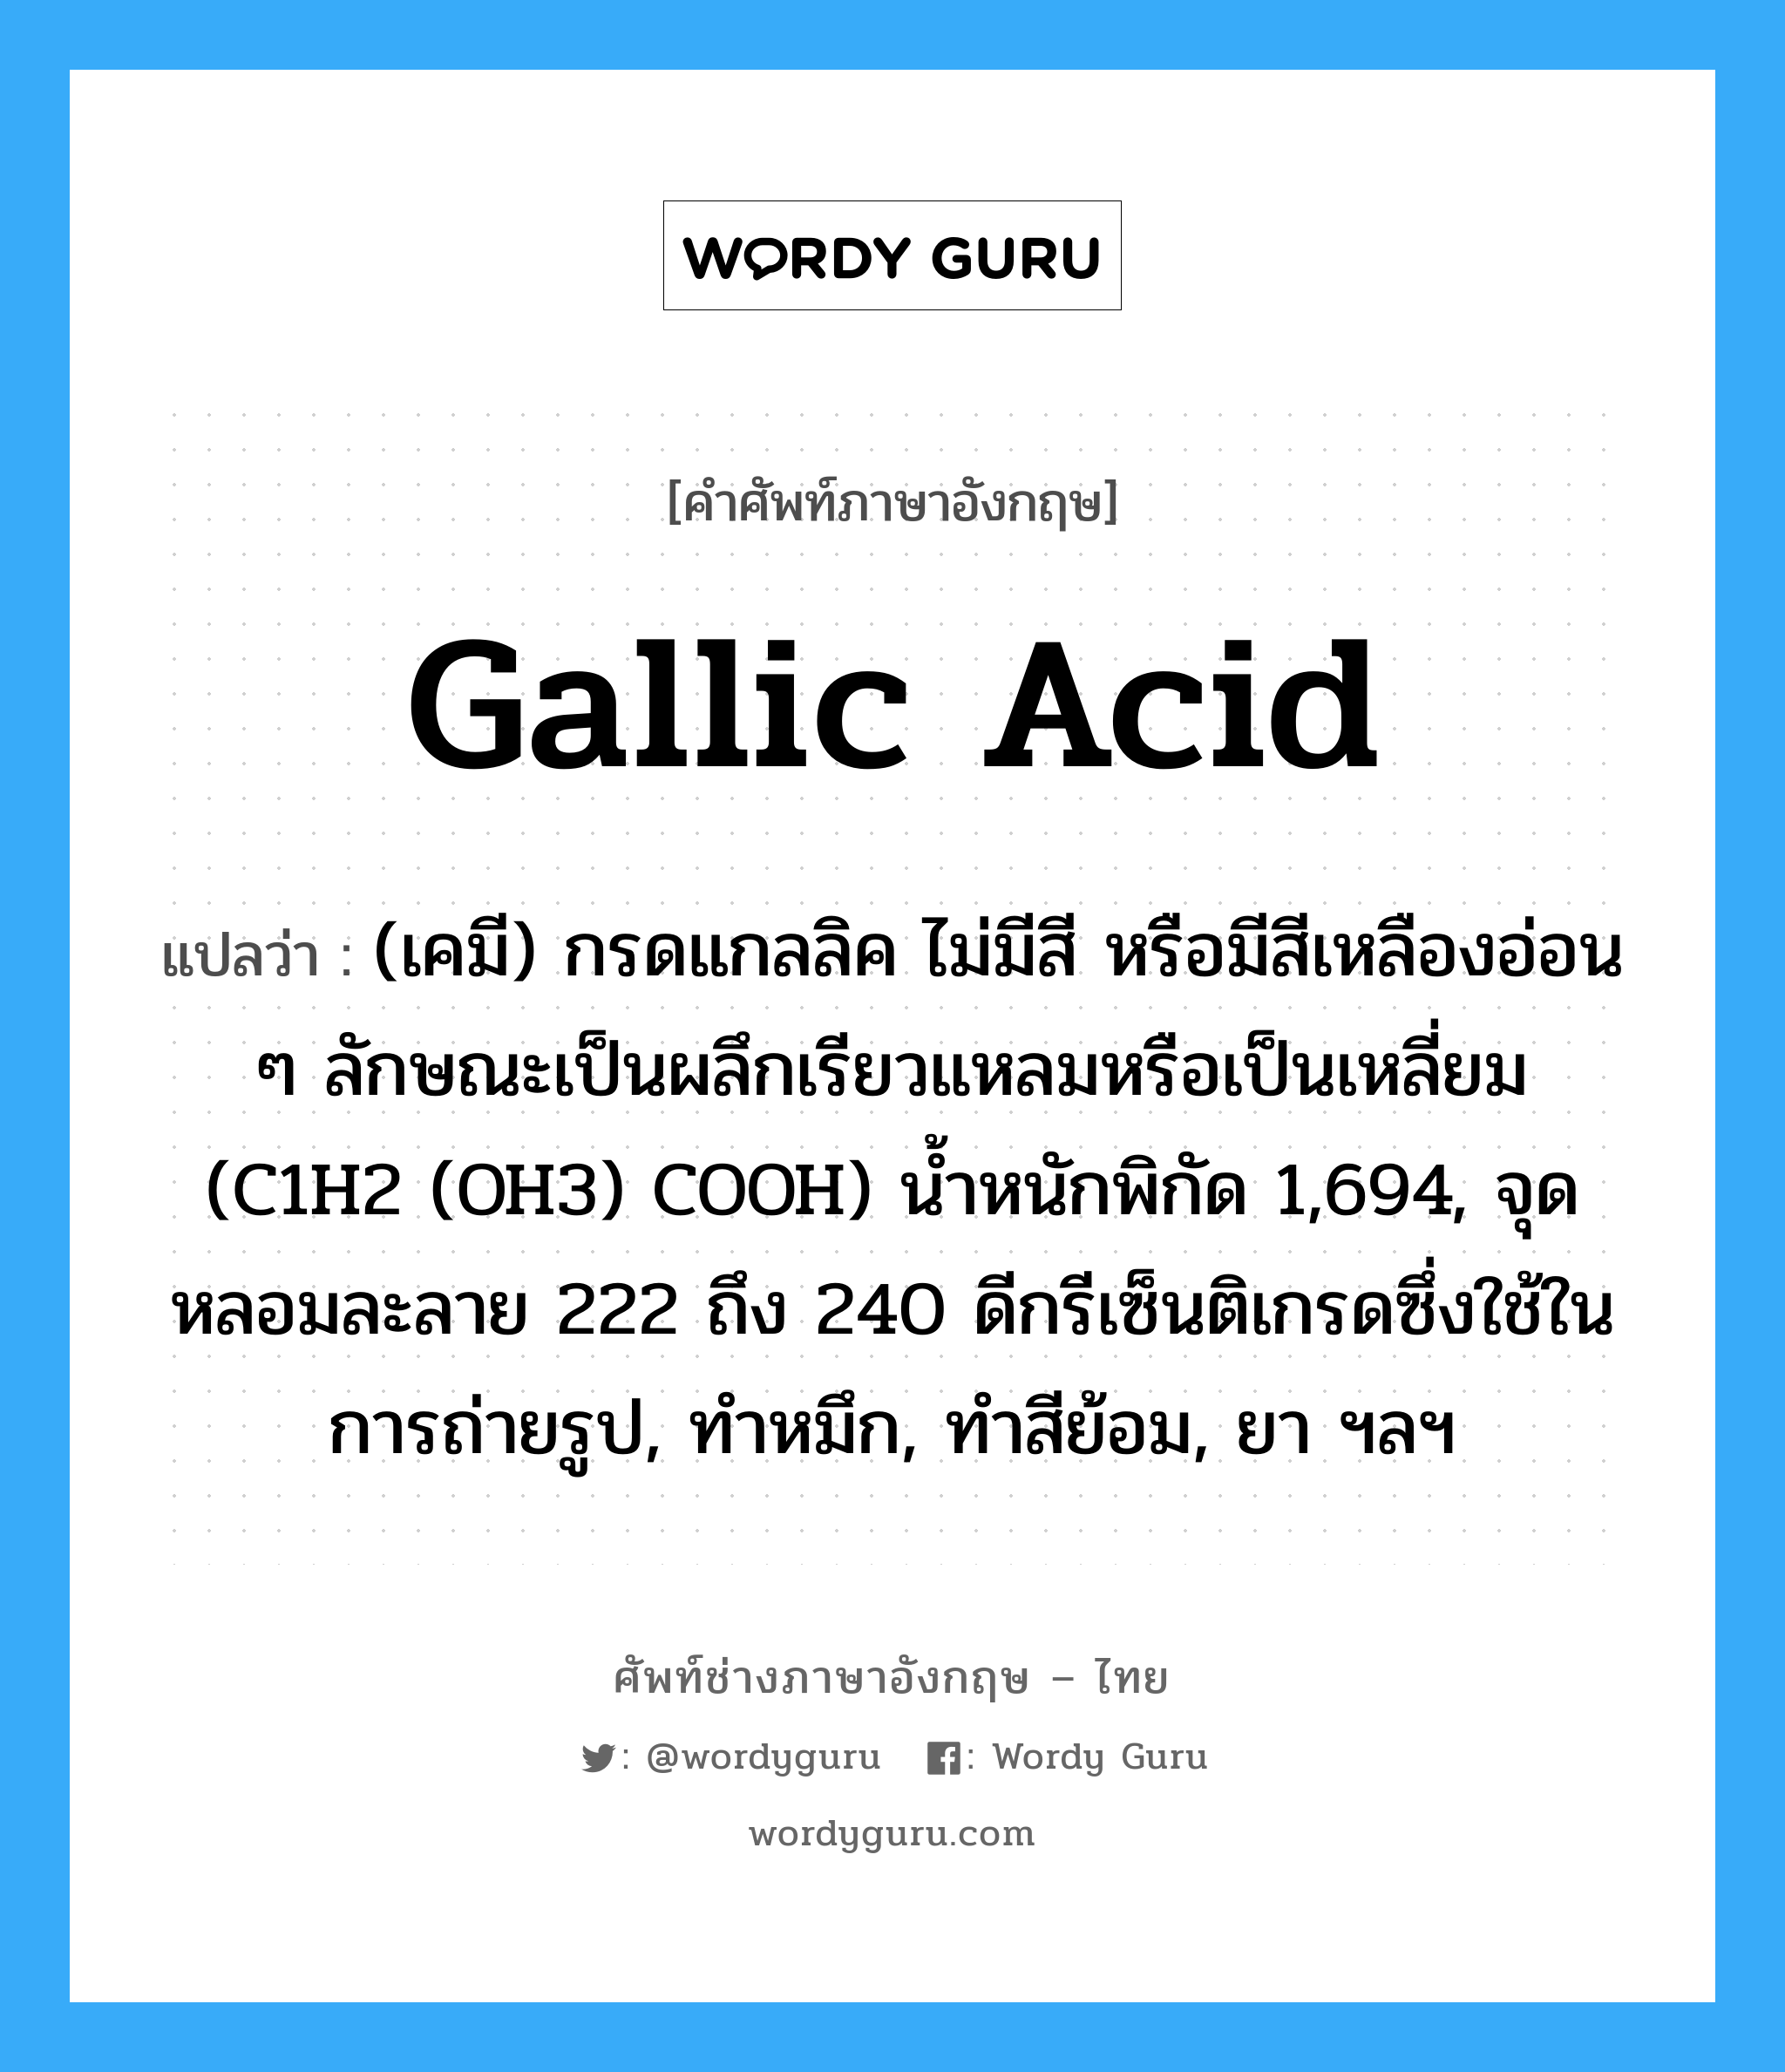 gallic acid แปลว่า?, คำศัพท์ช่างภาษาอังกฤษ - ไทย gallic acid คำศัพท์ภาษาอังกฤษ gallic acid แปลว่า (เคมี) กรดแกลลิค ไม่มีสี หรือมีสีเหลืองอ่อน ๆ ลักษณะเป็นผลึกเรียวแหลมหรือเป็นเหลี่ยม (C1H2 (OH3) COOH) น้ำหนักพิกัด 1,694, จุดหลอมละลาย 222 ถึง 240 ดีกรีเซ็นติเกรดซึ่งใช้ในการถ่ายรูป, ทำหมึก, ทำสีย้อม, ยา ฯลฯ